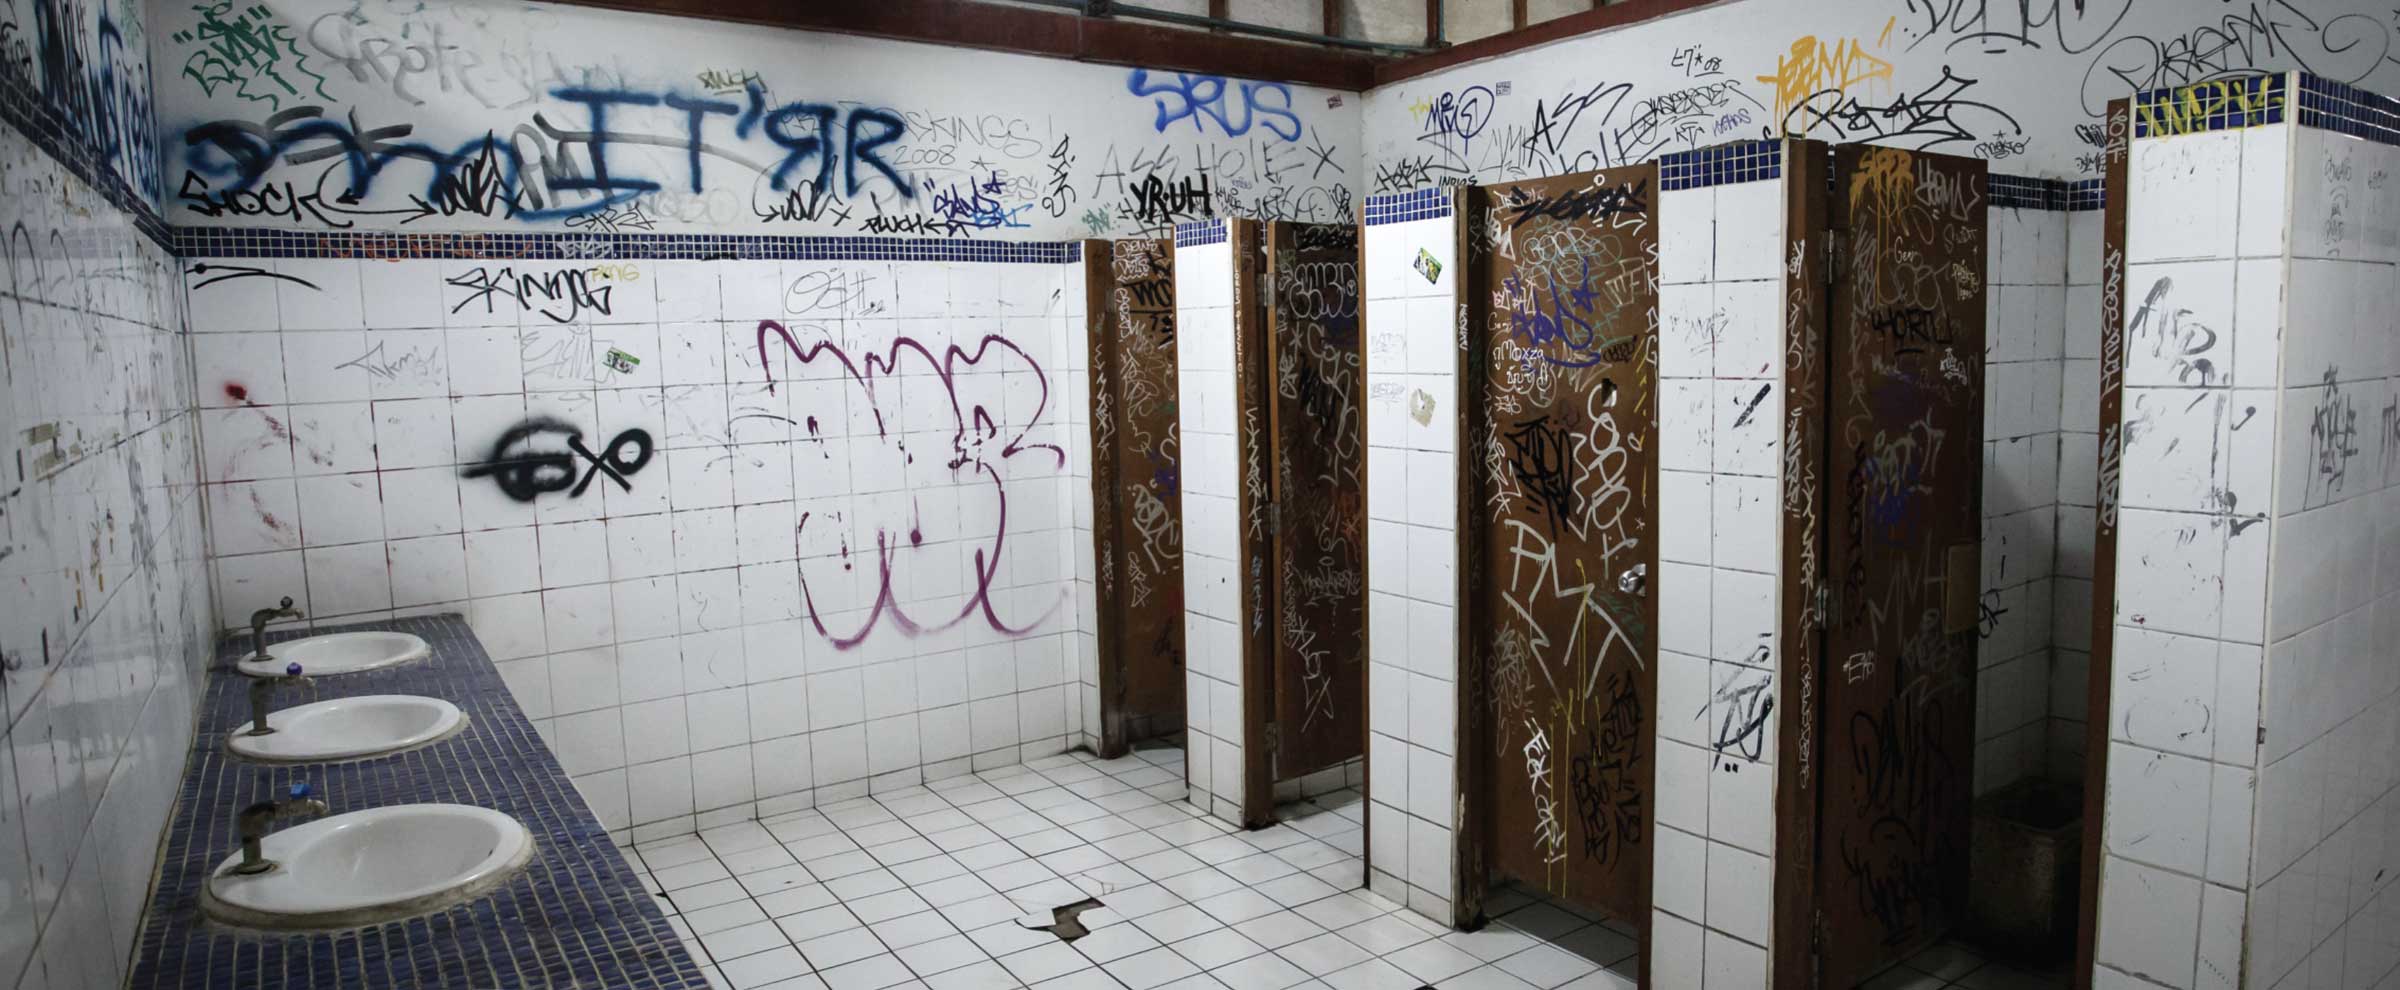 Graffiti Restroom